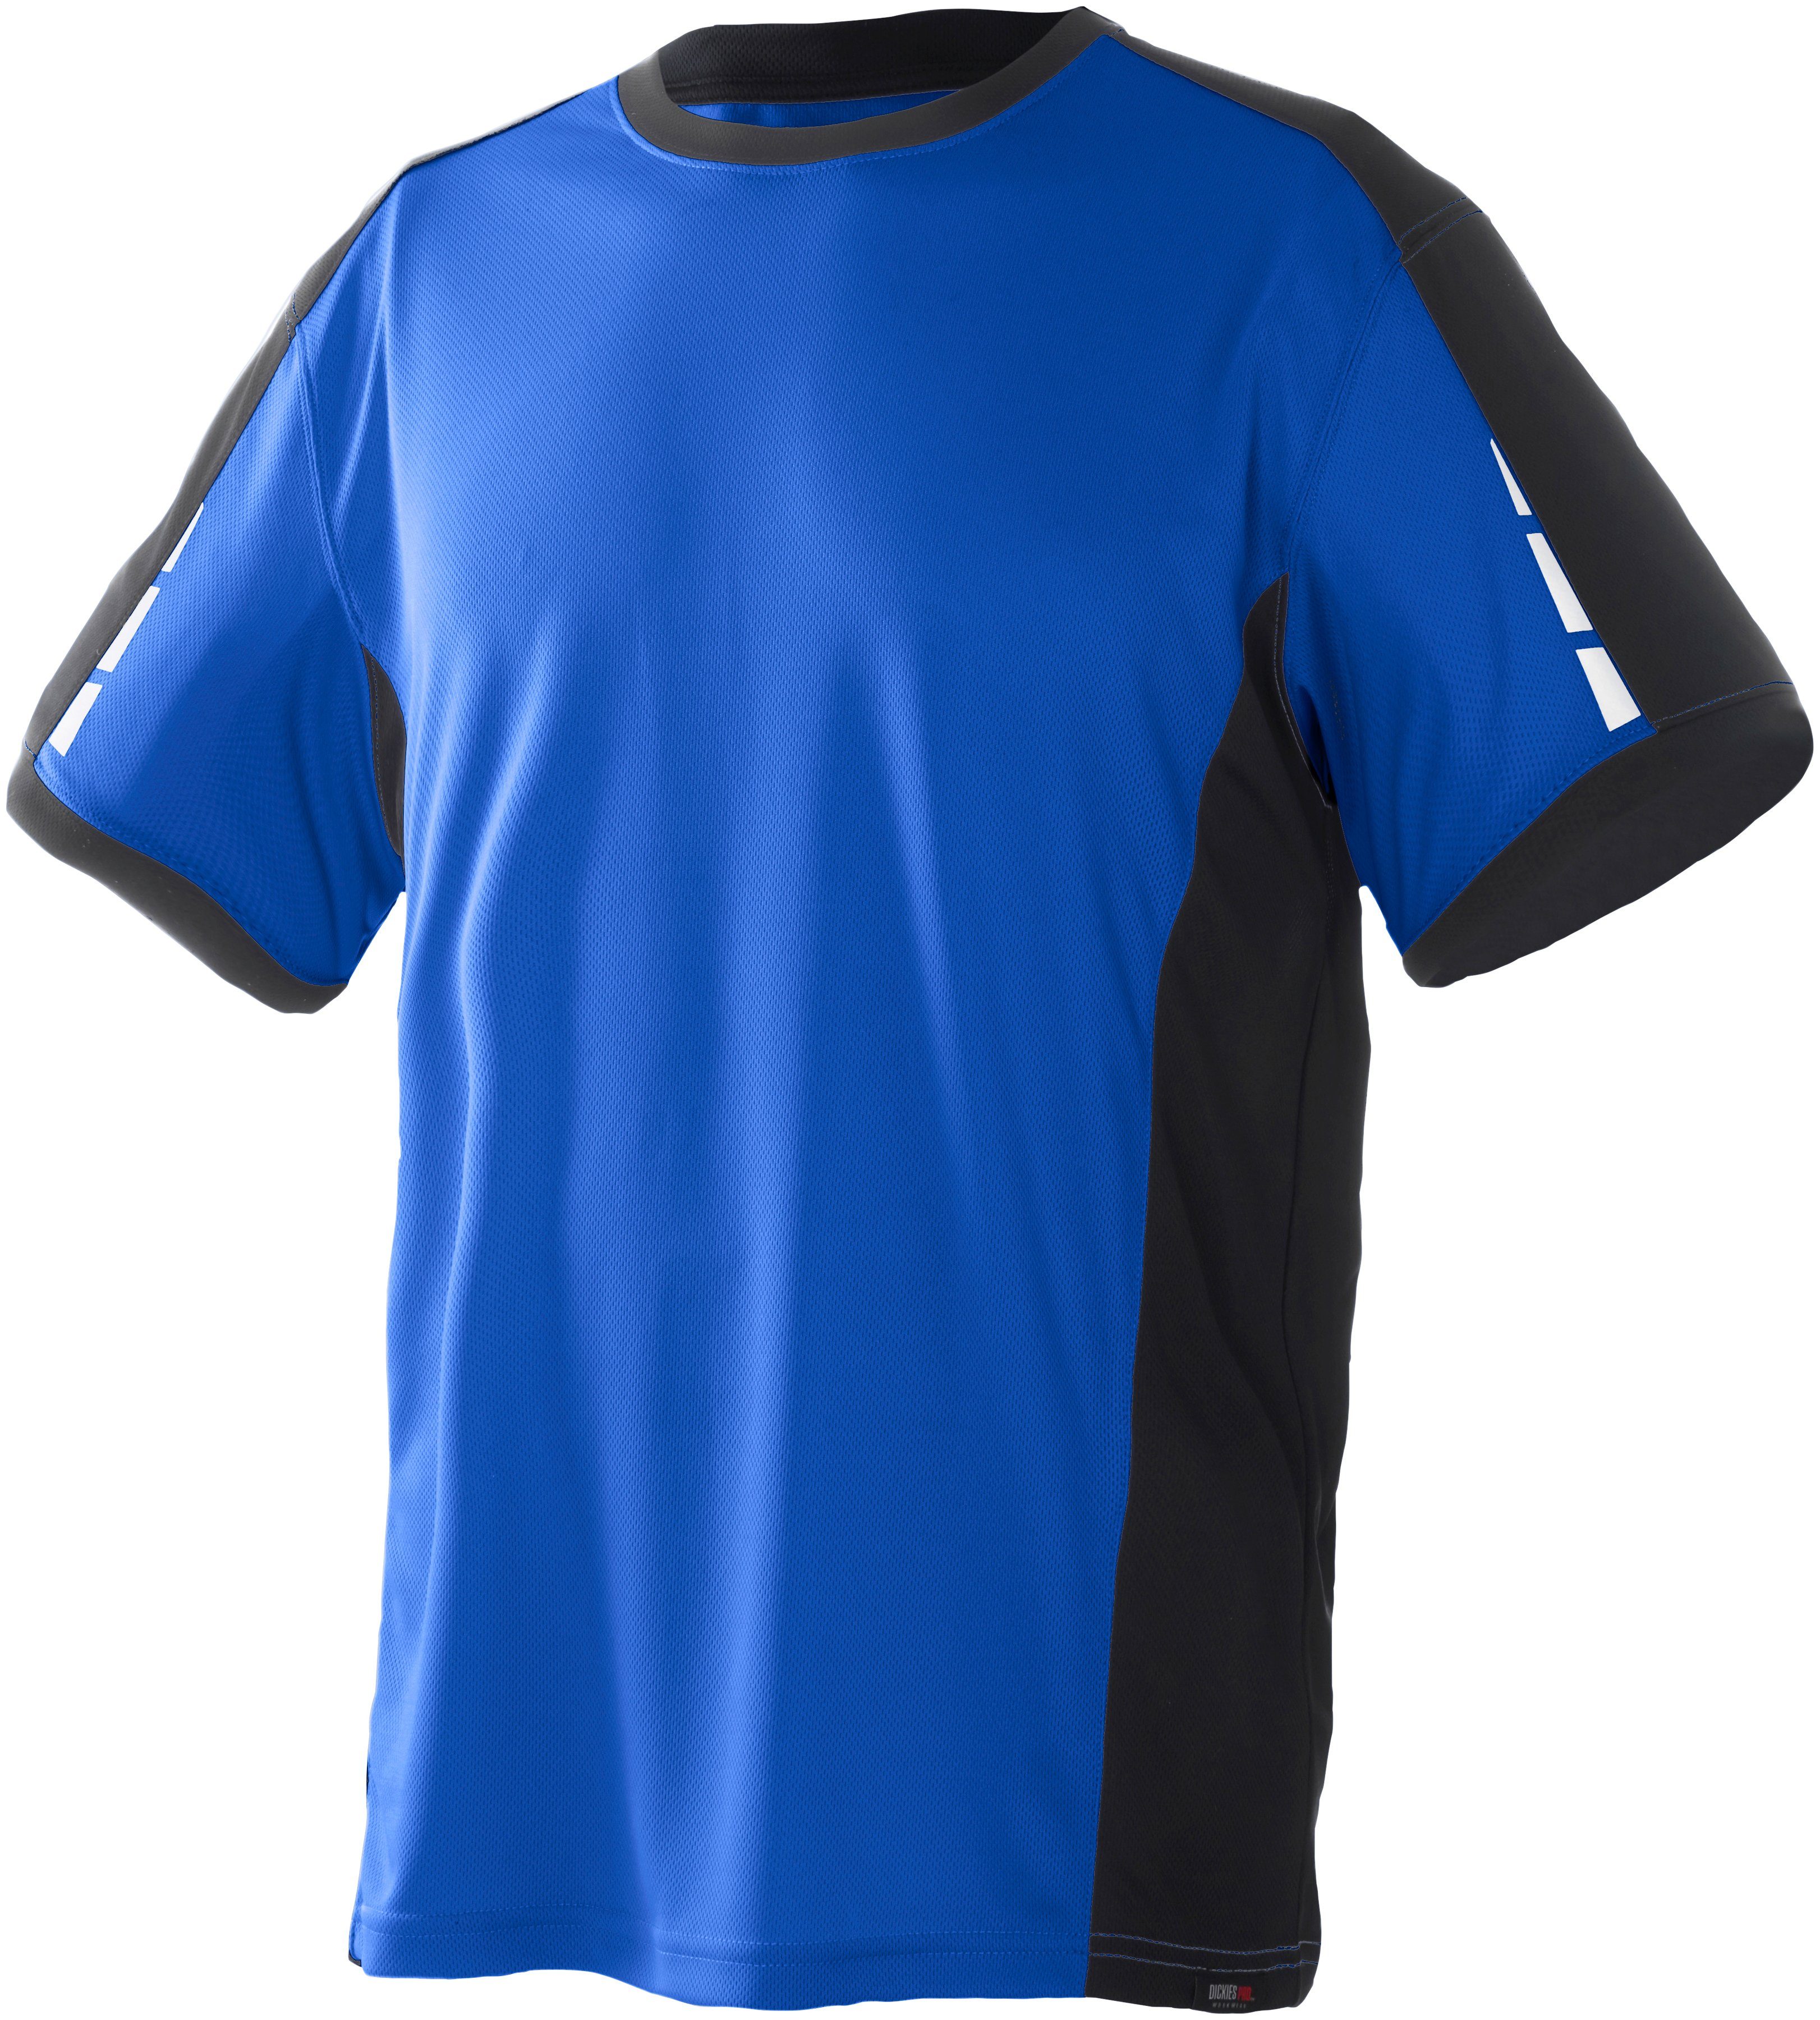 Ärmeln reflektierenden Dickies T-Shirt Pro royalblau-schwarz Details an mit den